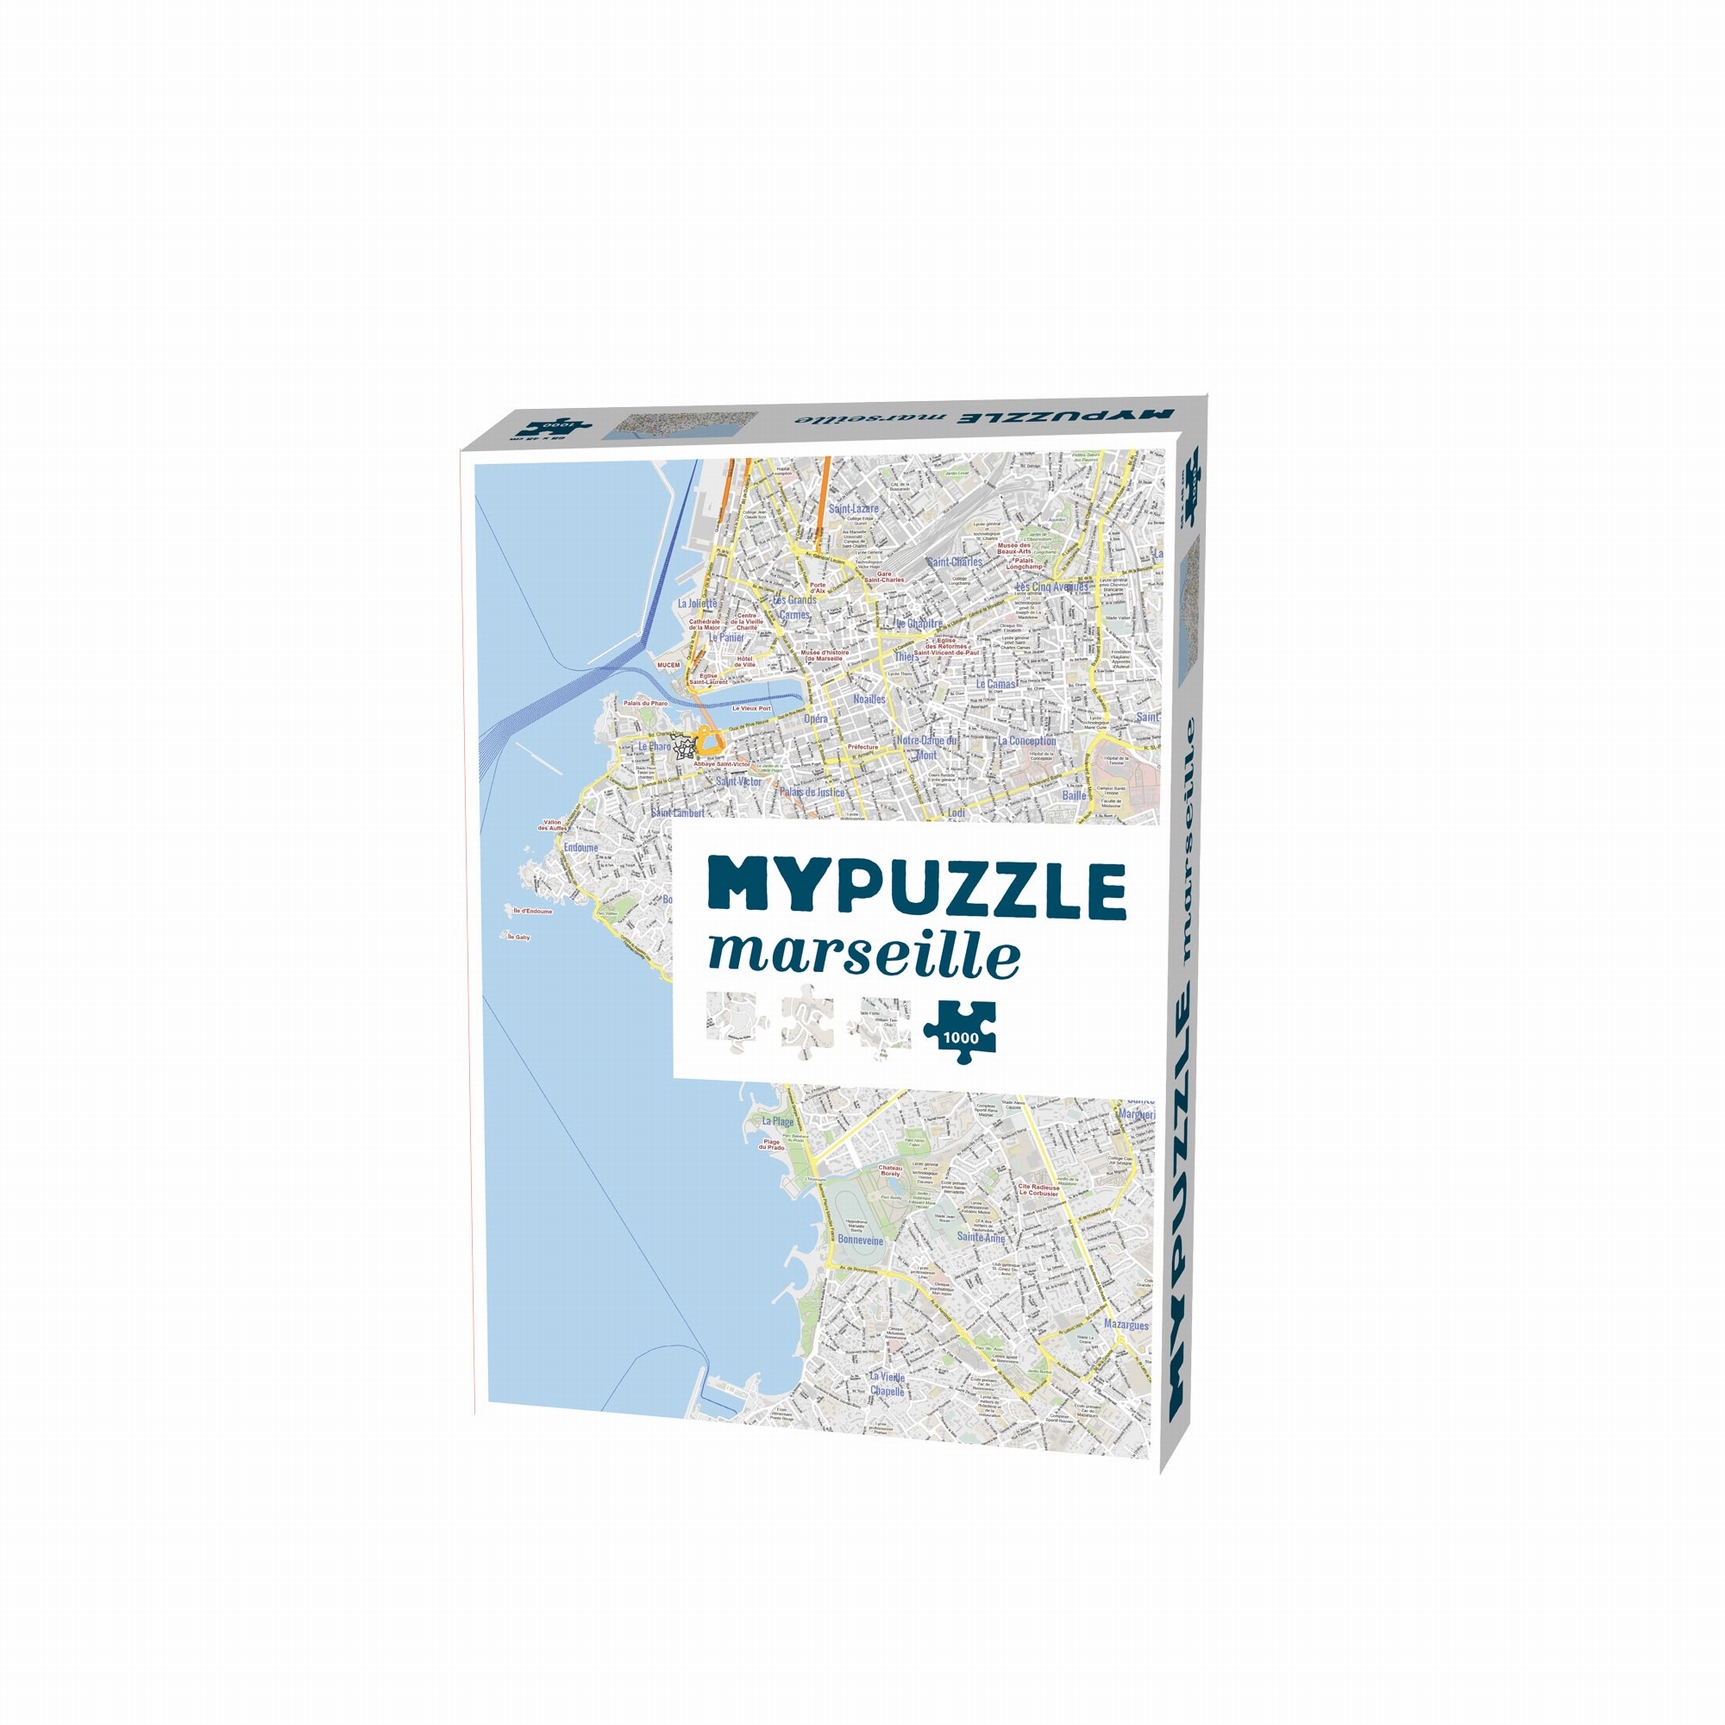 MYPUZZLE MARSEILLE Helvetiq-531919 1000 pièces Puzzles - Voyages